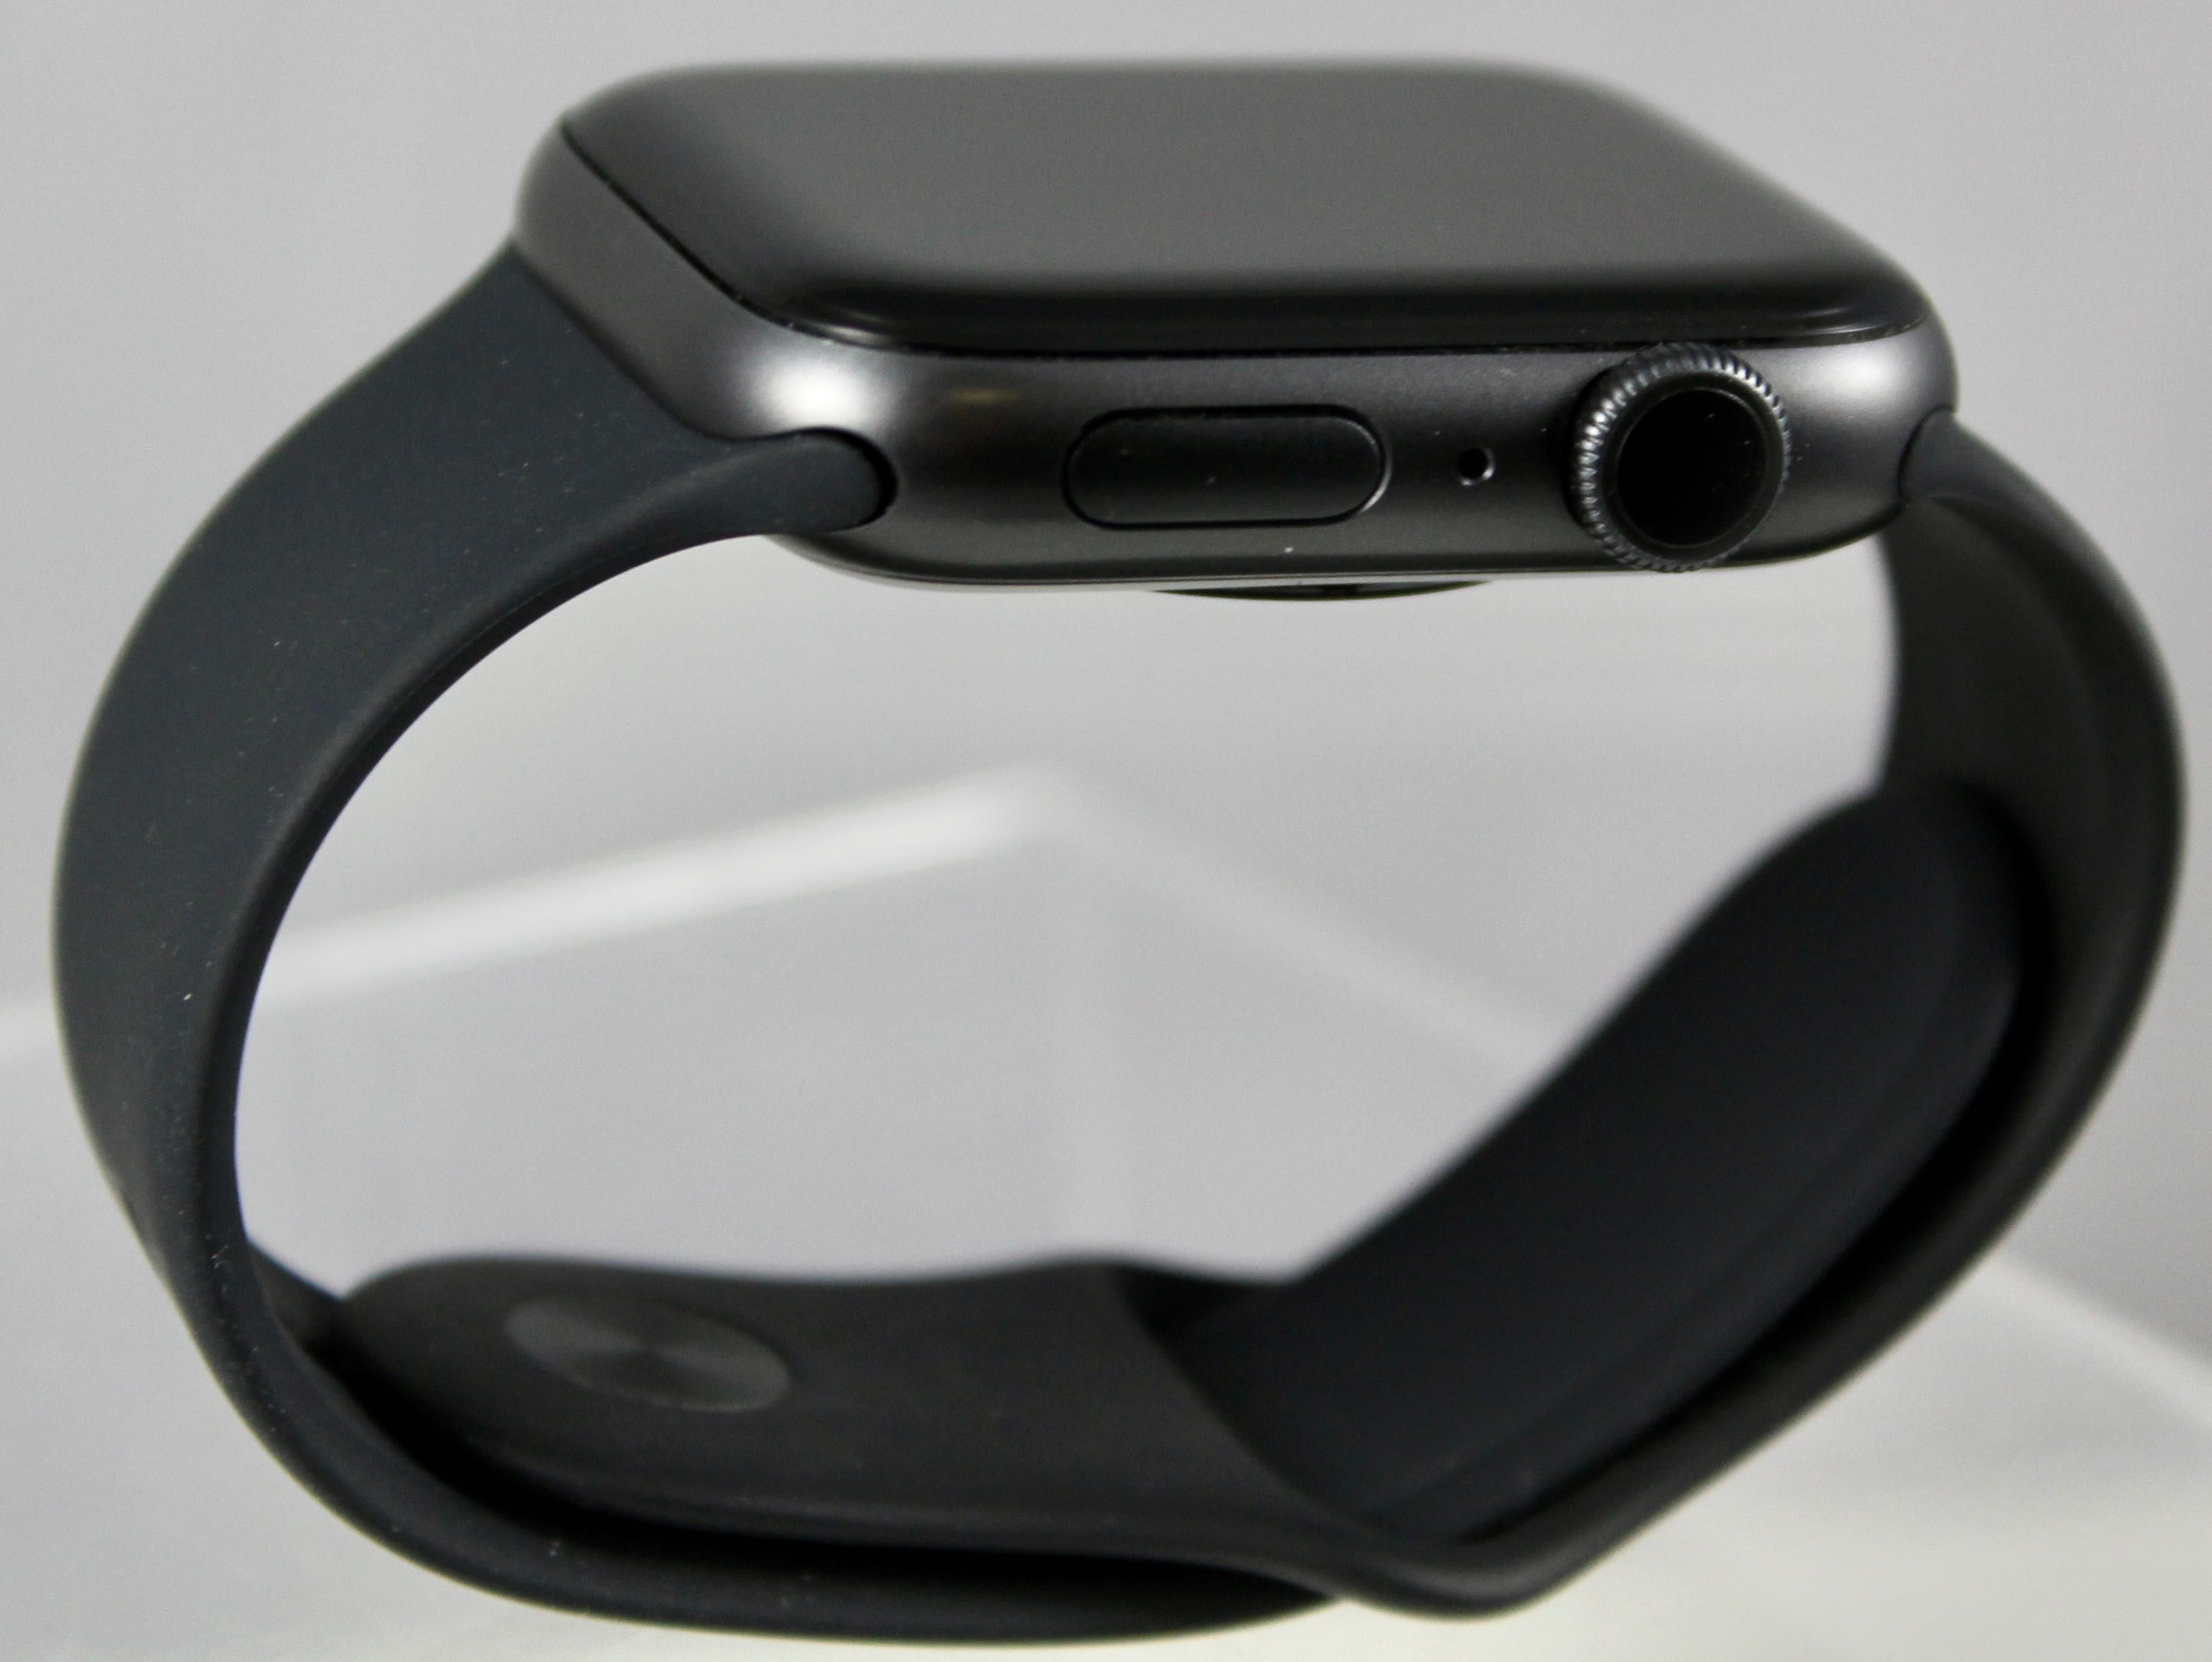 iGadżet | Apple Watch Series 5 44mm bateria 96% 2 paski smartwatch